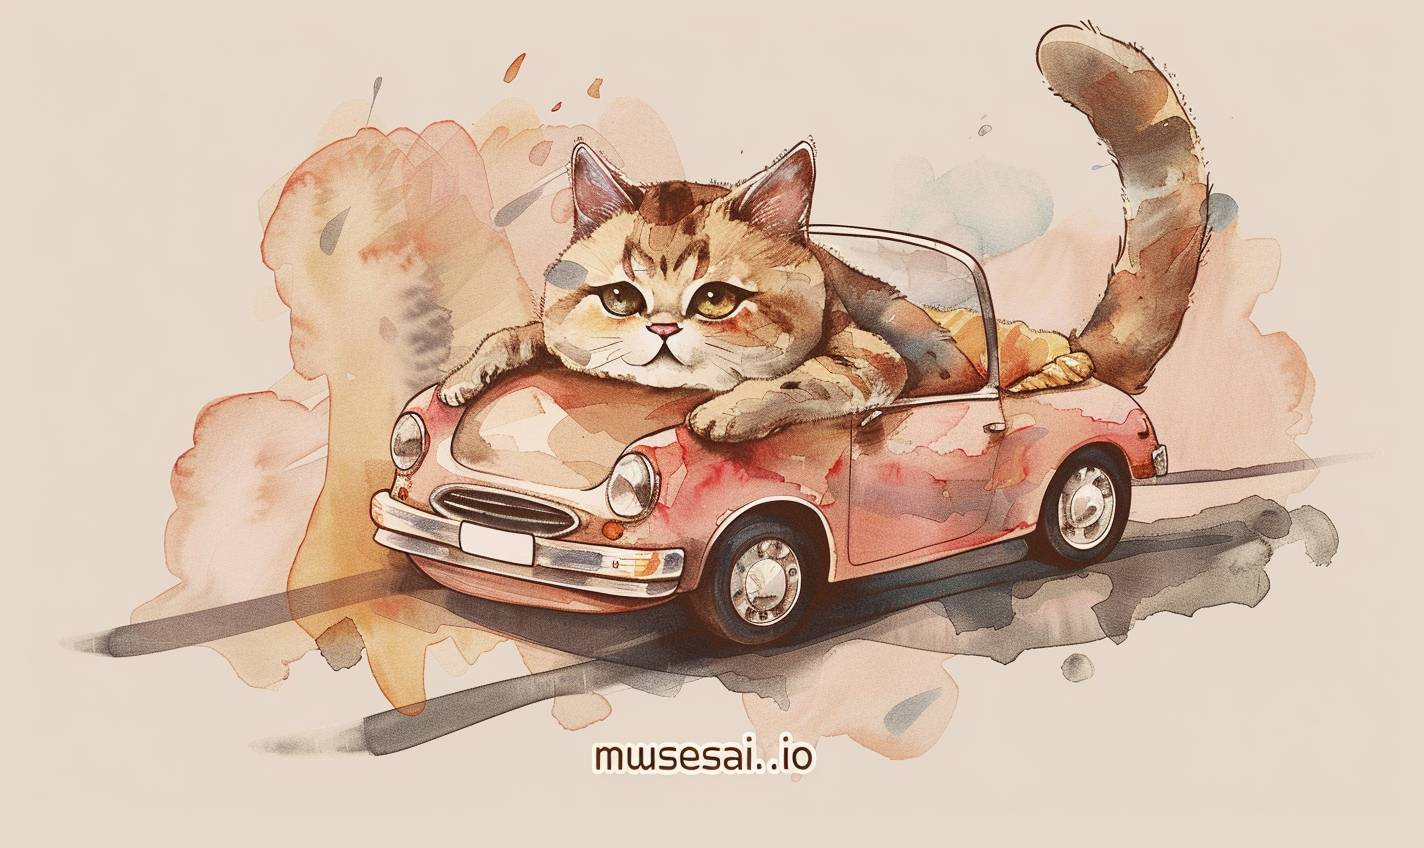 물감 스타일의 2D 평면 일러스트 티셔츠 디자인에서 귀여운 고양이가 작은 차 안에 있으며 “musesai.io”라는 텍스트가 쓰여 있습니다